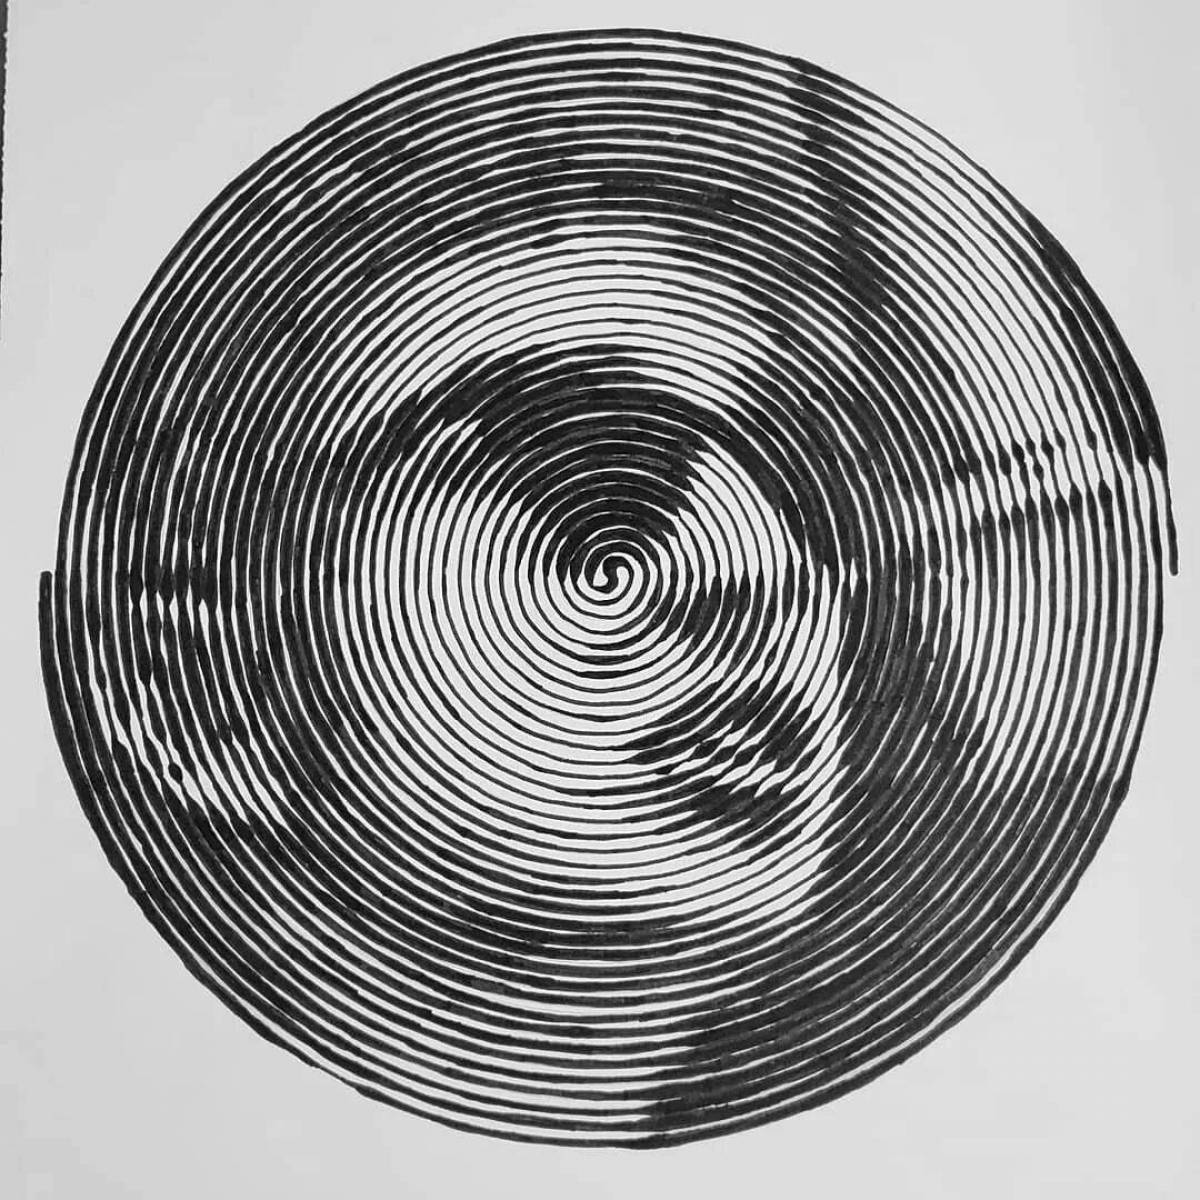 Dima Maslennikov's stunning spiral